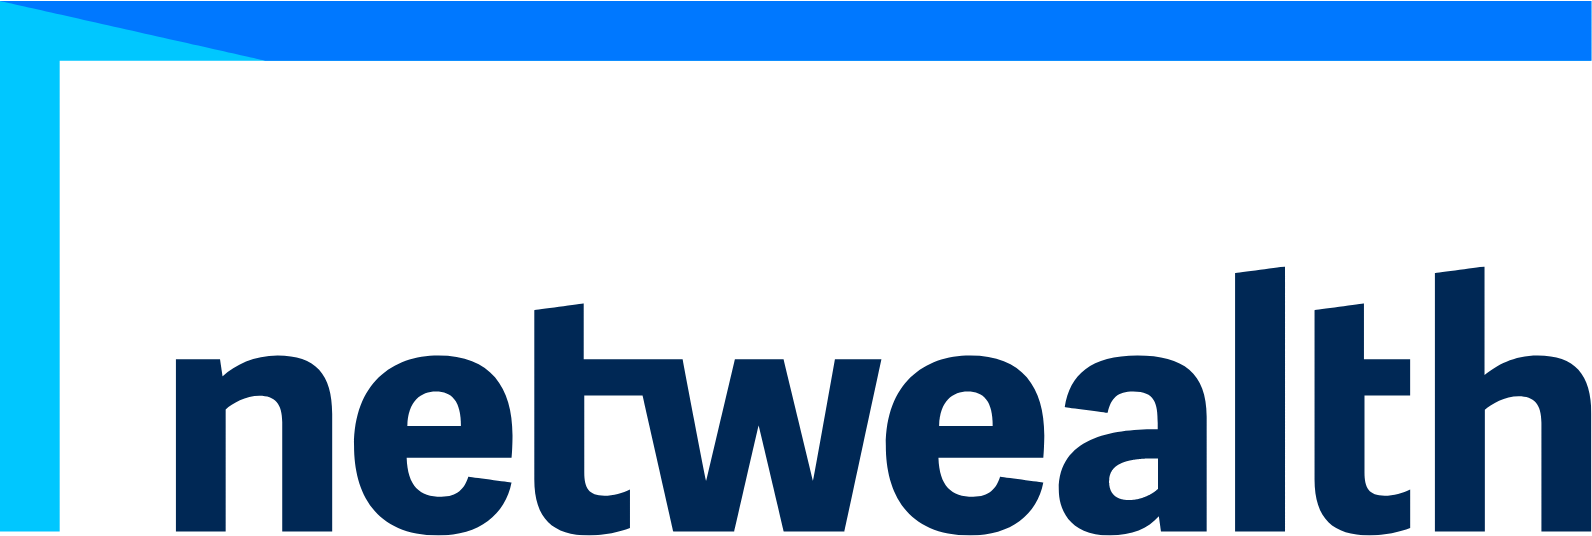 Netwealth logo large (transparent PNG)